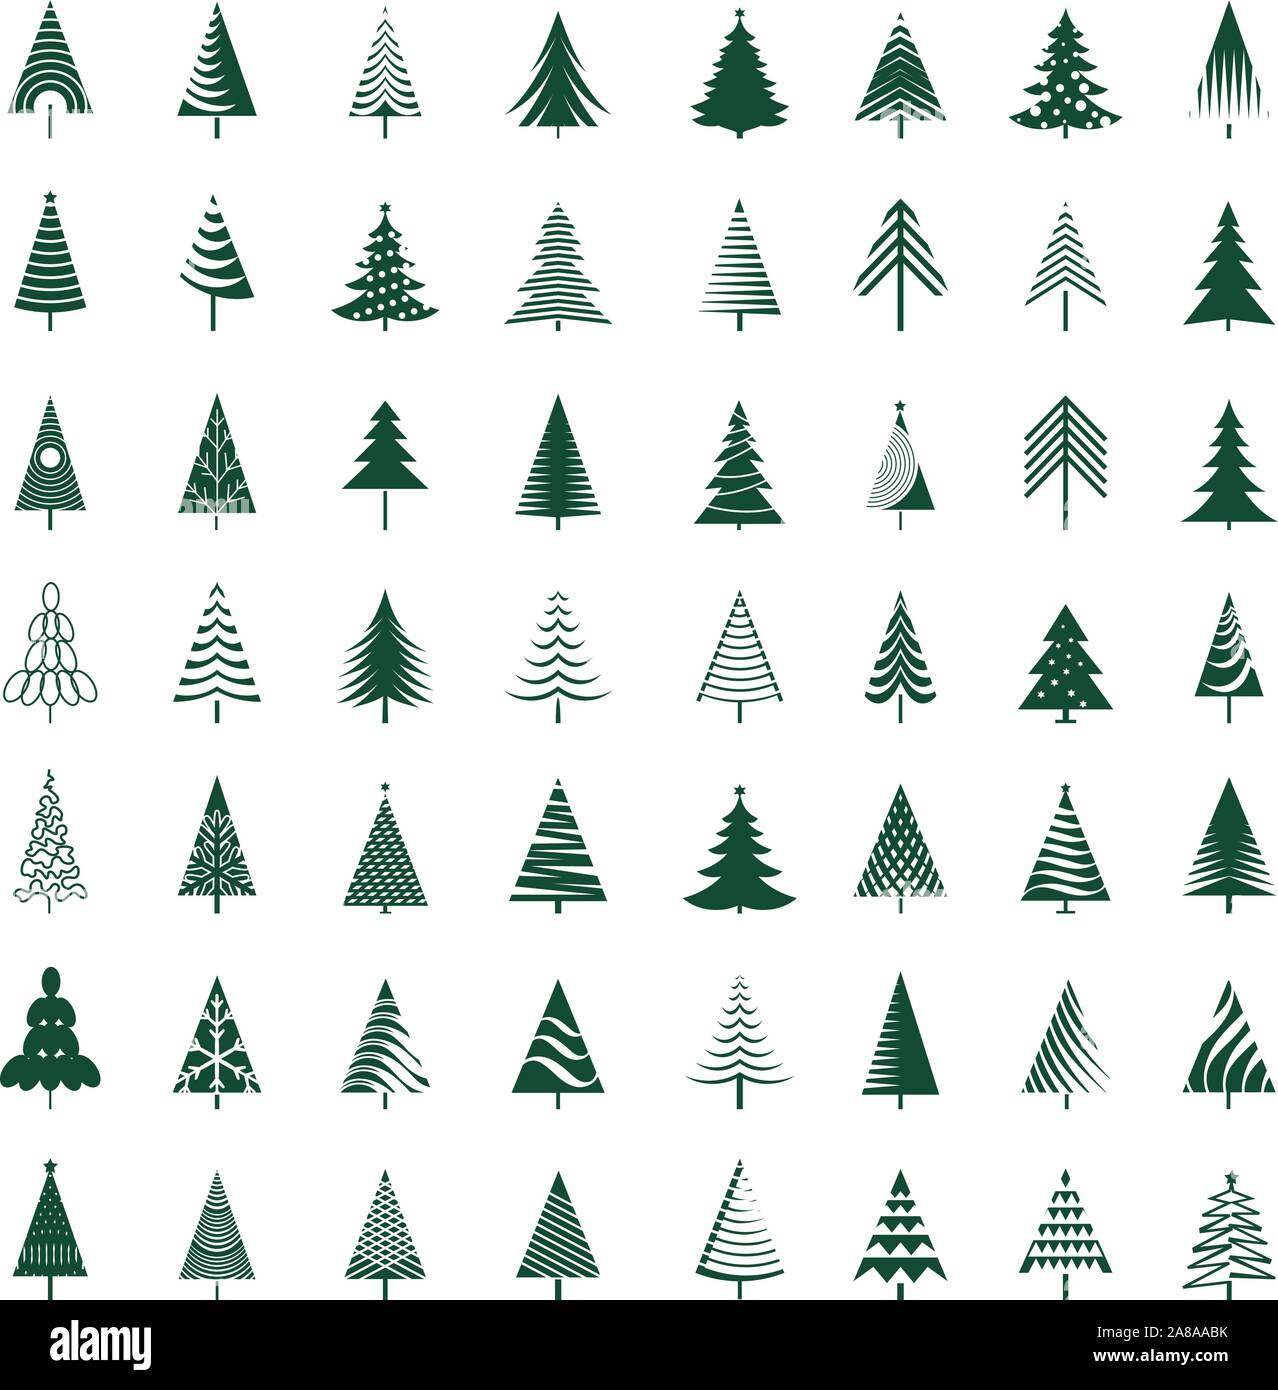 Satz von grün Weihnachtsbäume. Winter design elemente und einfach Piktogramm Sammlung. Isolierte Vektor xmas Symbole und Illustration. Stock Vektor